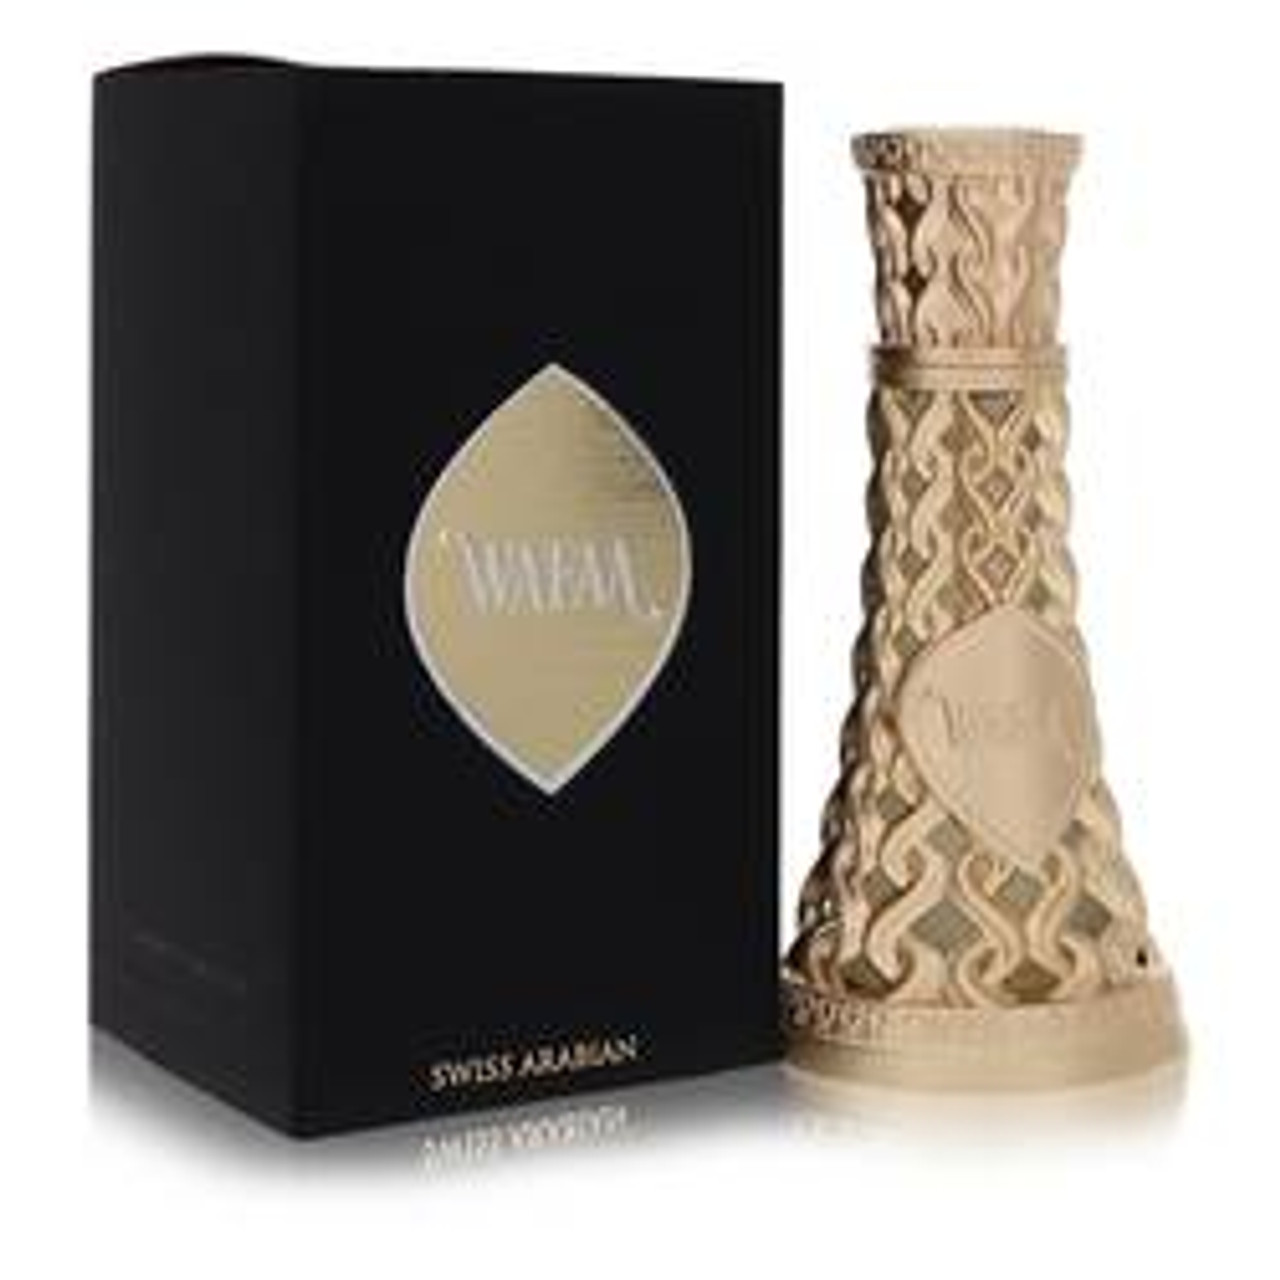 Swiss Arabian Wafaa Cologne By Swiss Arabian Eau De Parfum Spray (Unisex) 1.7 oz for Men - *Pre-Order